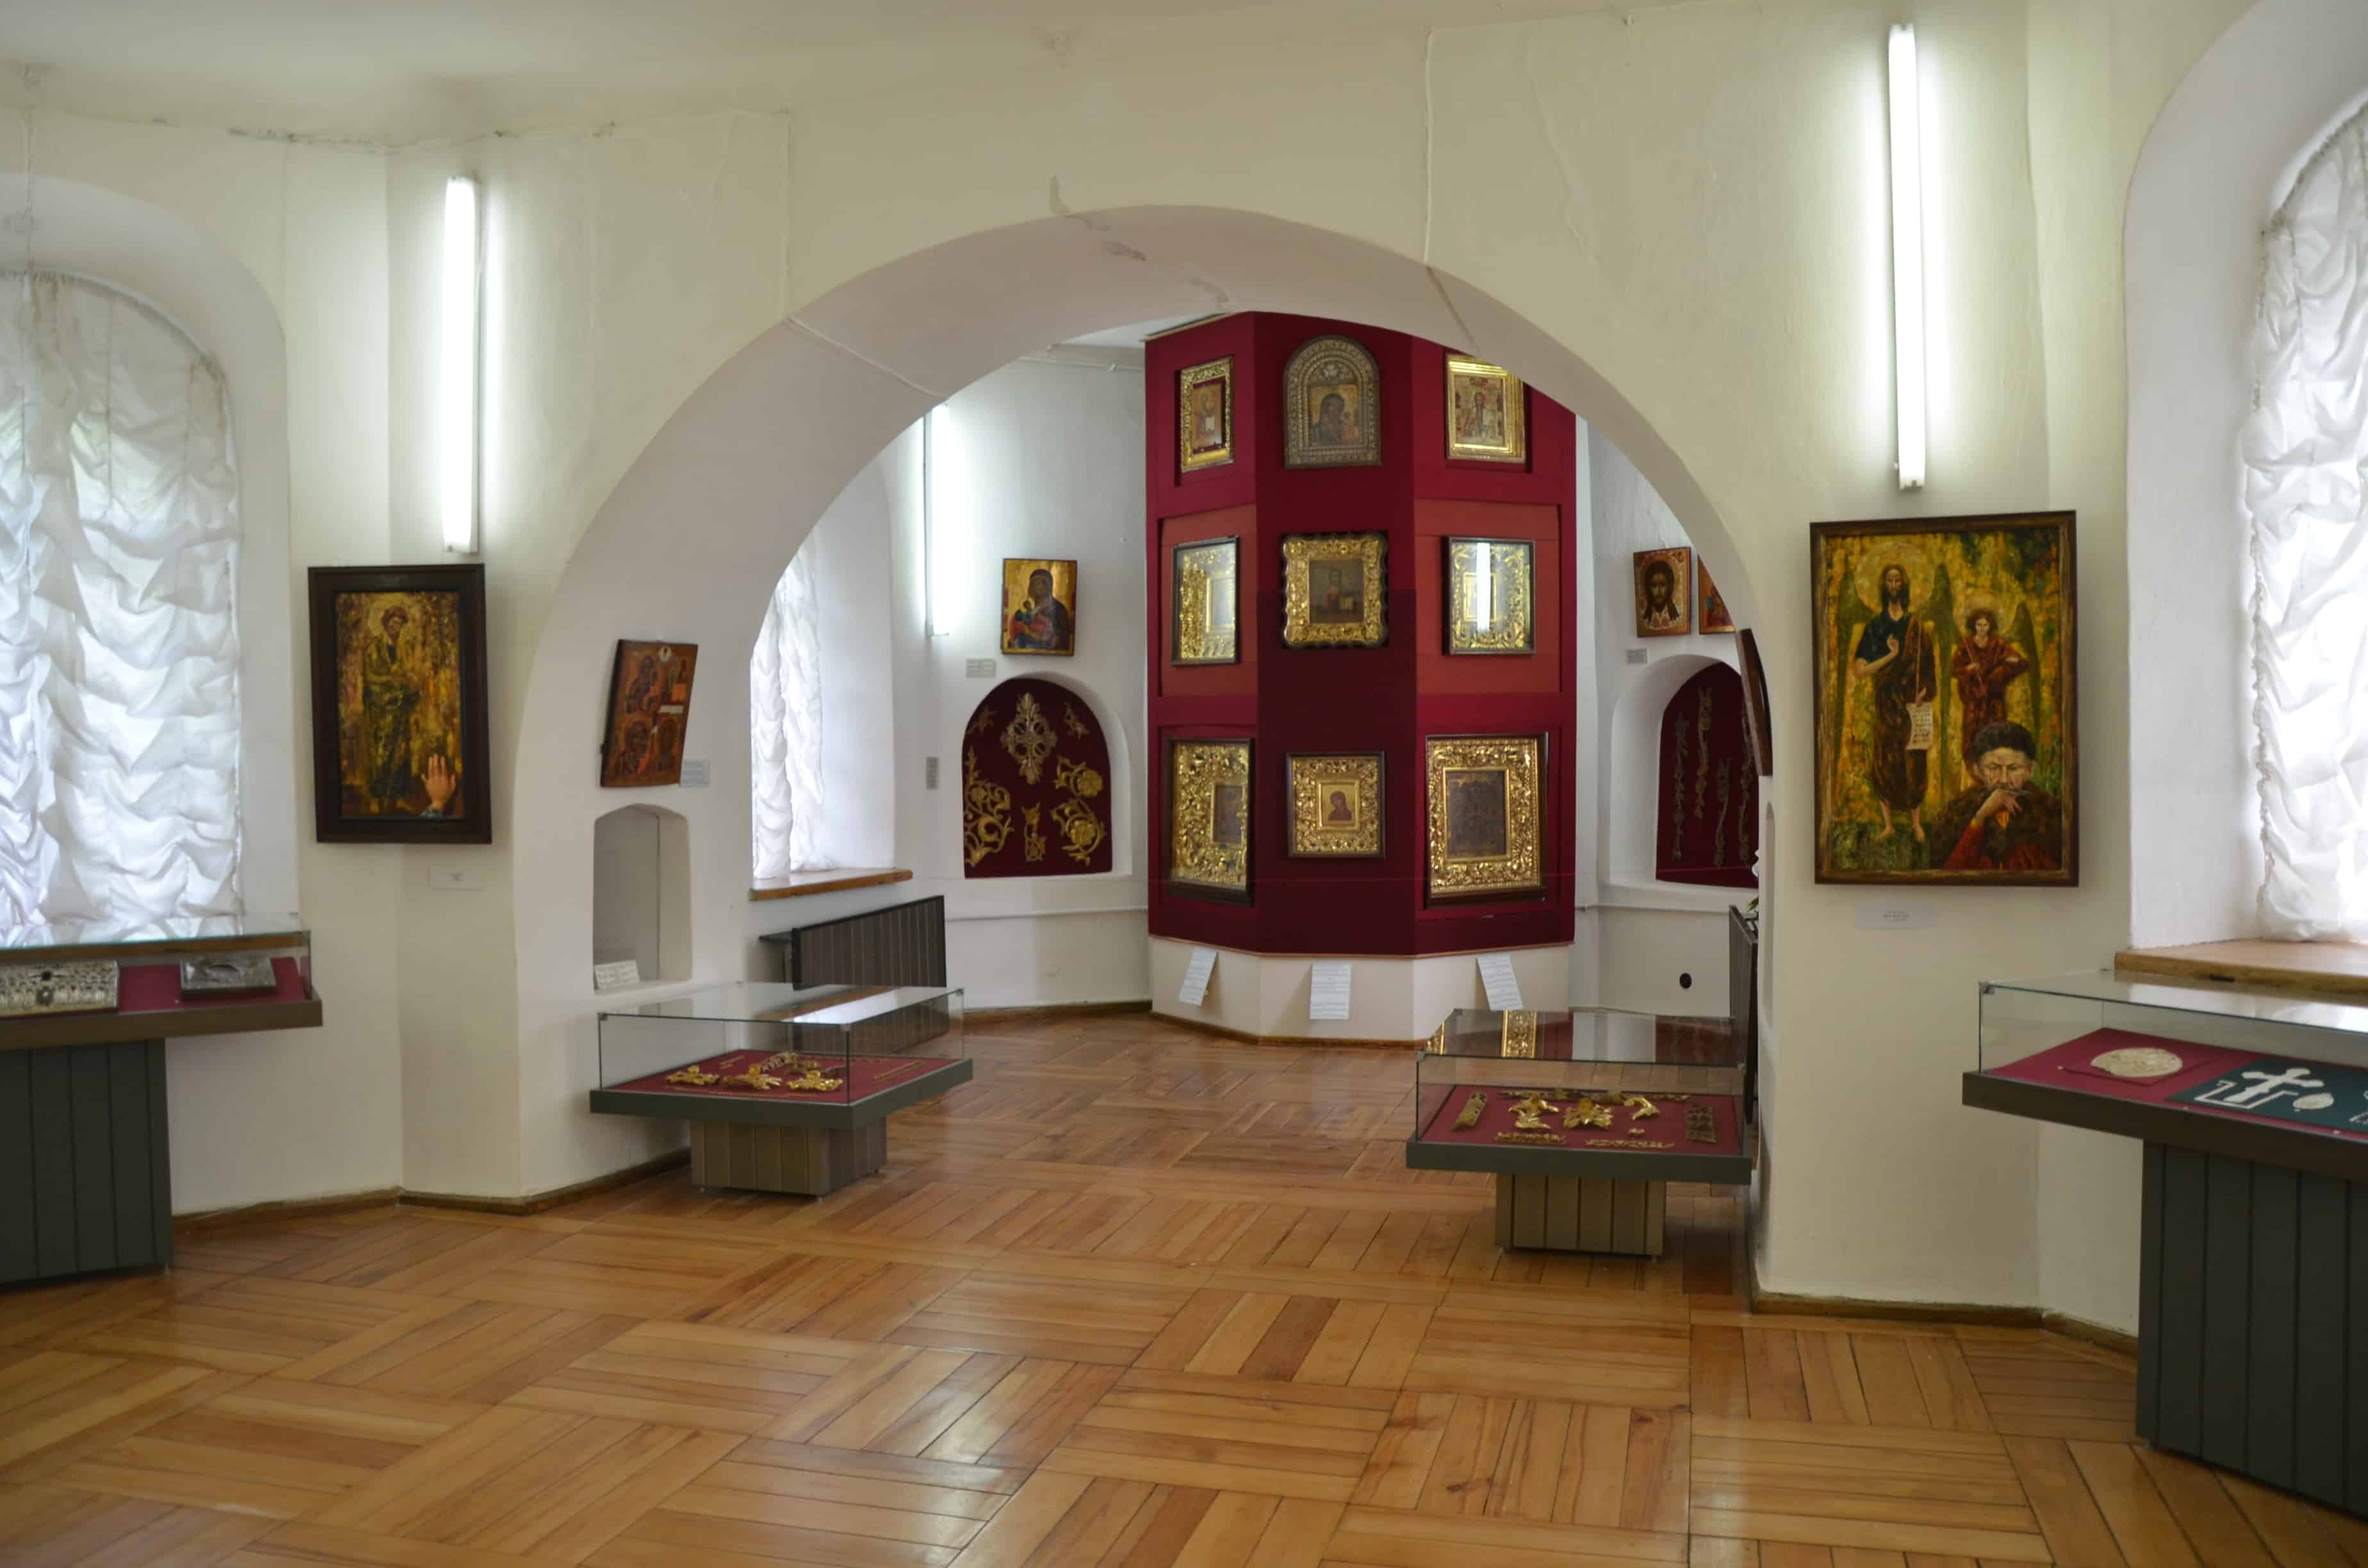 Exhibits inside the Collegium